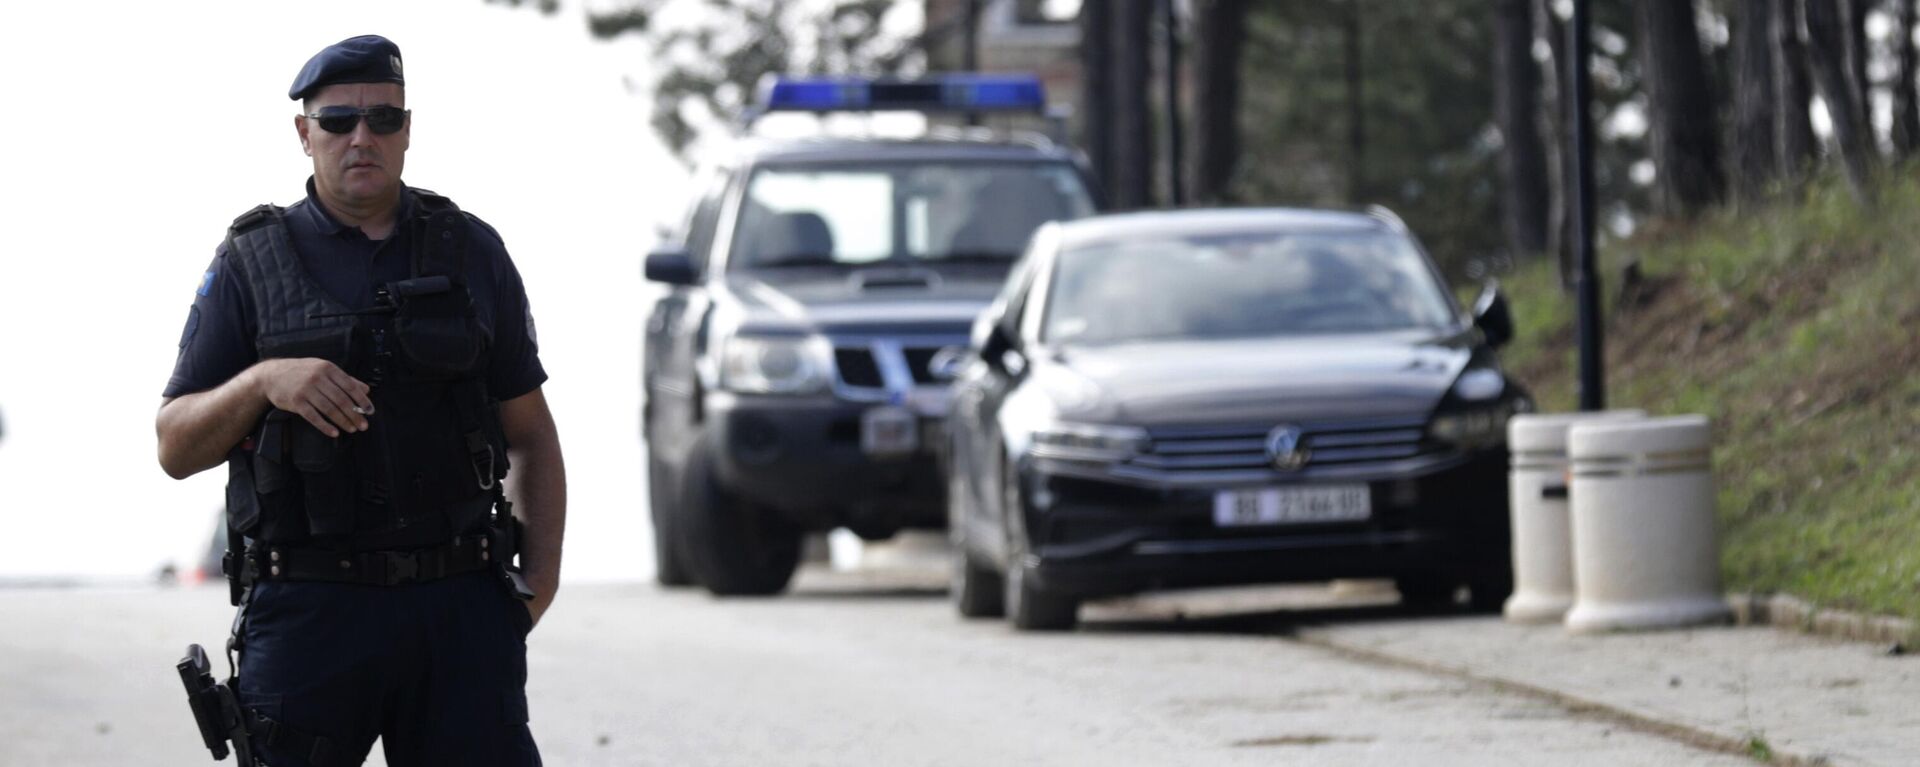 Policial kosovar de guarda durante visita de Ana Brnabic, primeira-ministra da Sérvia, ao vilarejo de Mitrovica, Kosovo, 5 de setembro de 2022 - Sputnik Brasil, 1920, 24.11.2022